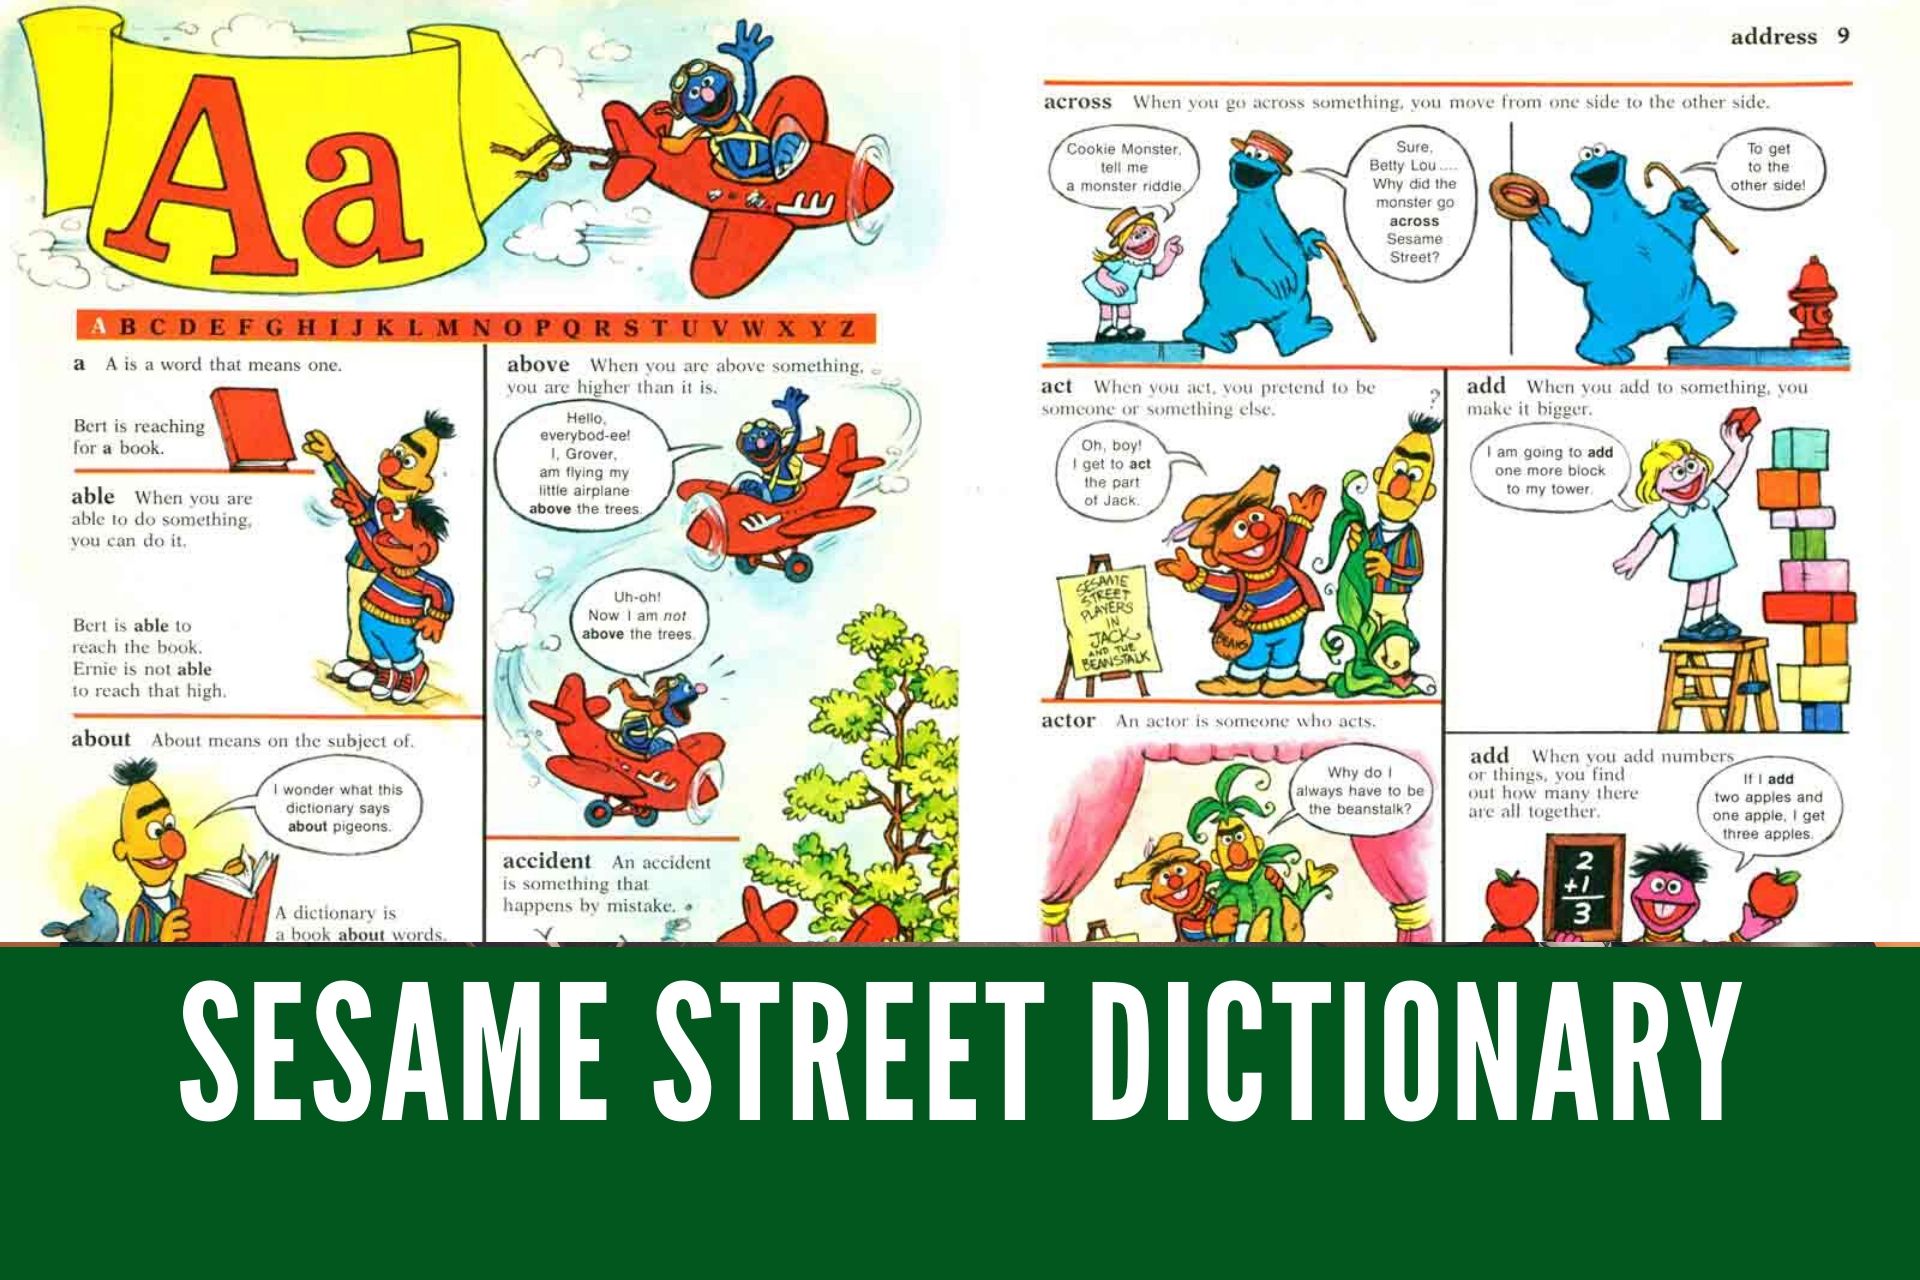 オススメ英語教材 絵本辞書 The Sesame Street Dictionary でネイティブの英語感覚を身につけよう 金沢優のイメージで話せる英語 英会話の学び方